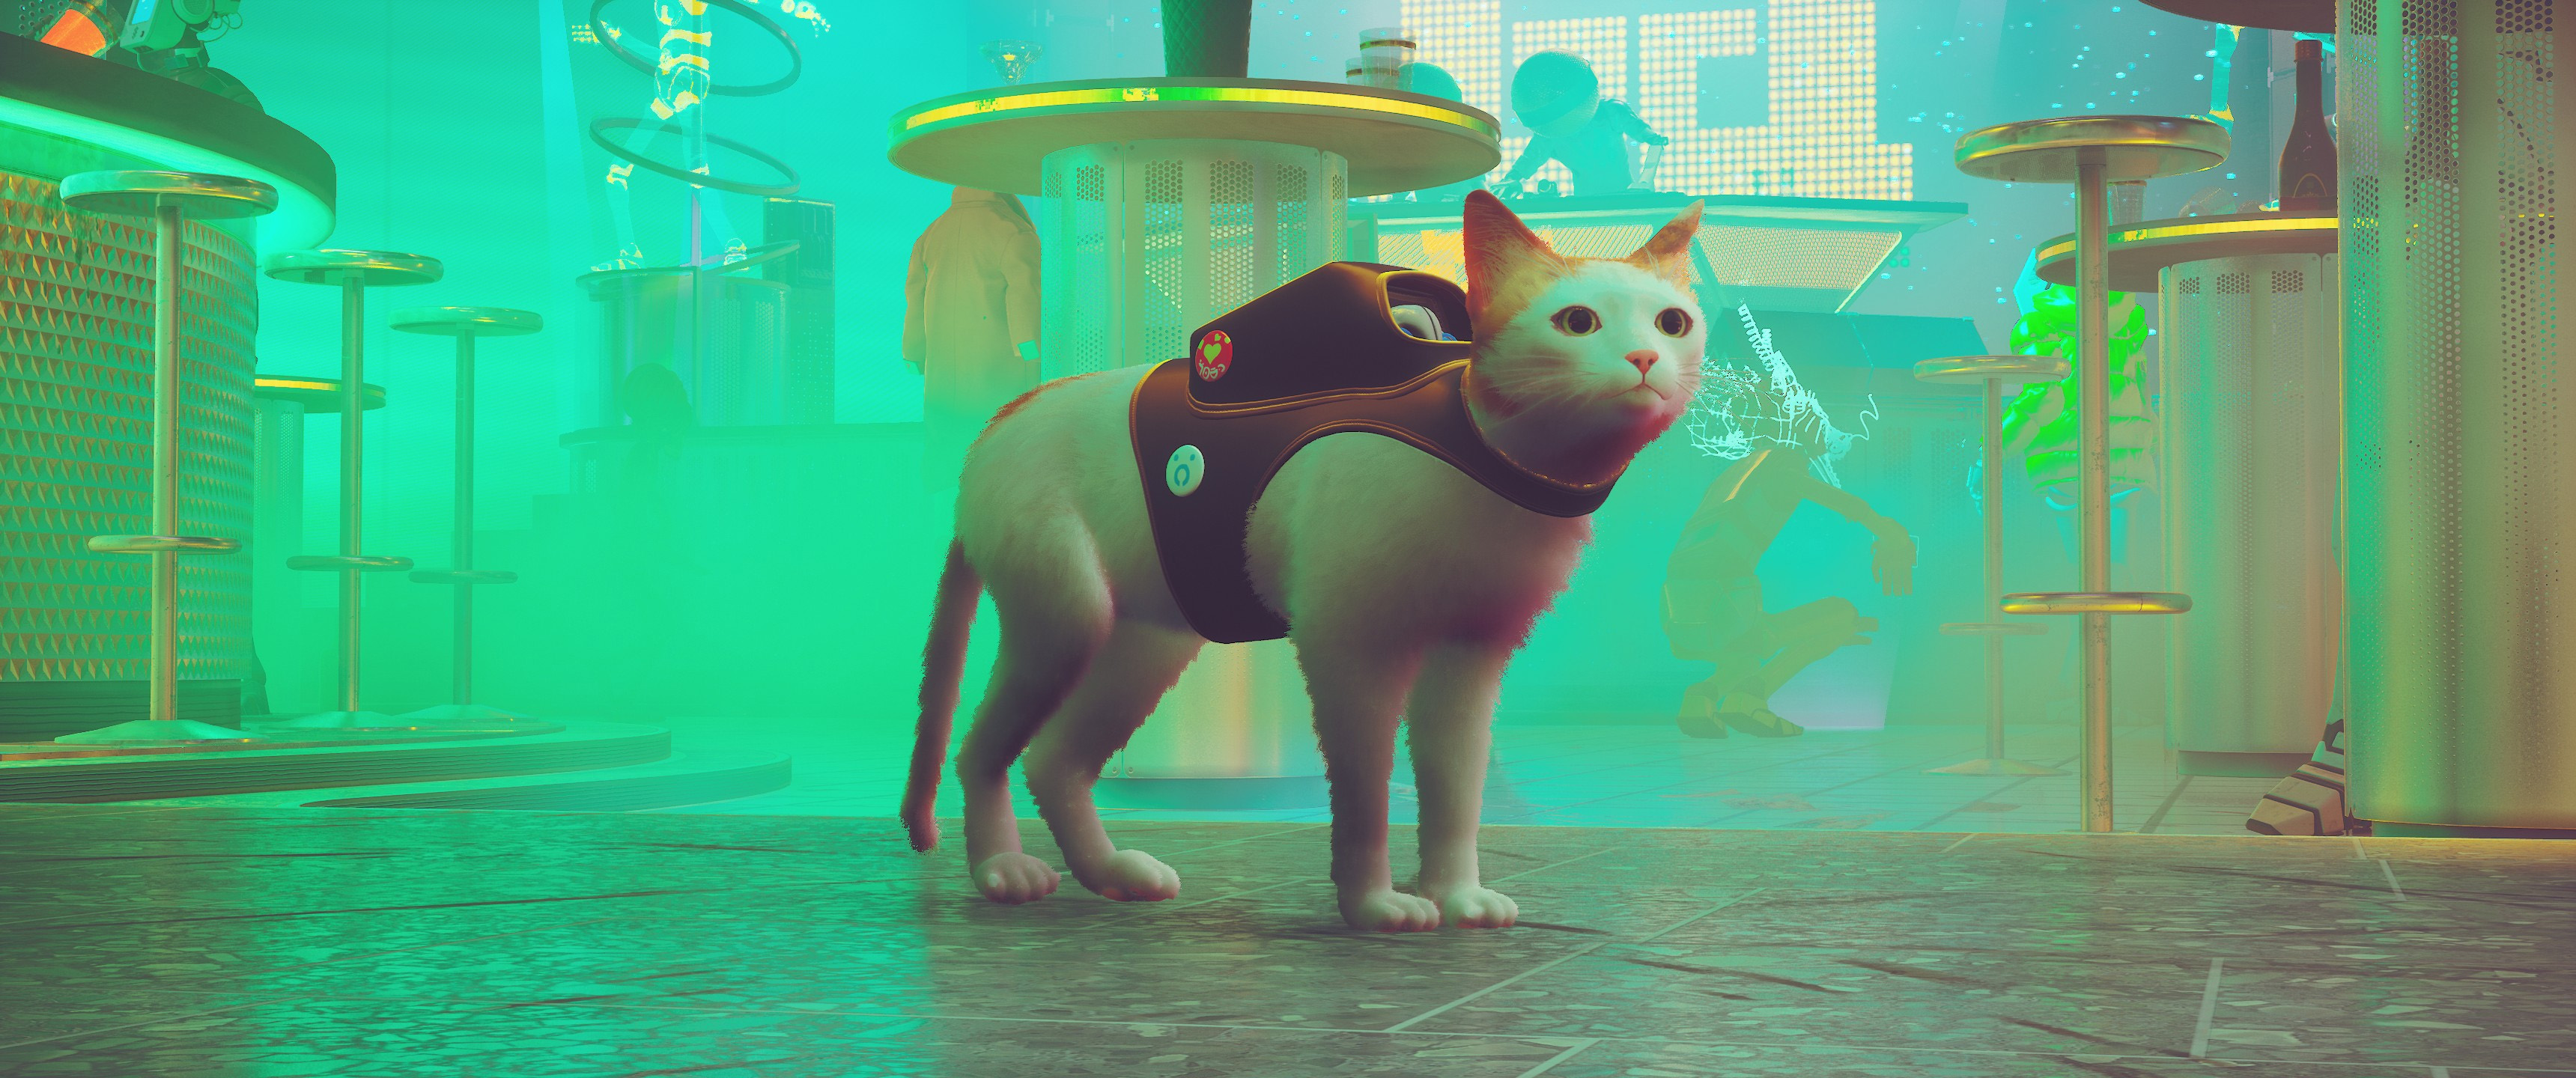 第三貓稱冒險遊戲《Stray》Mod分享各種可愛貓貓